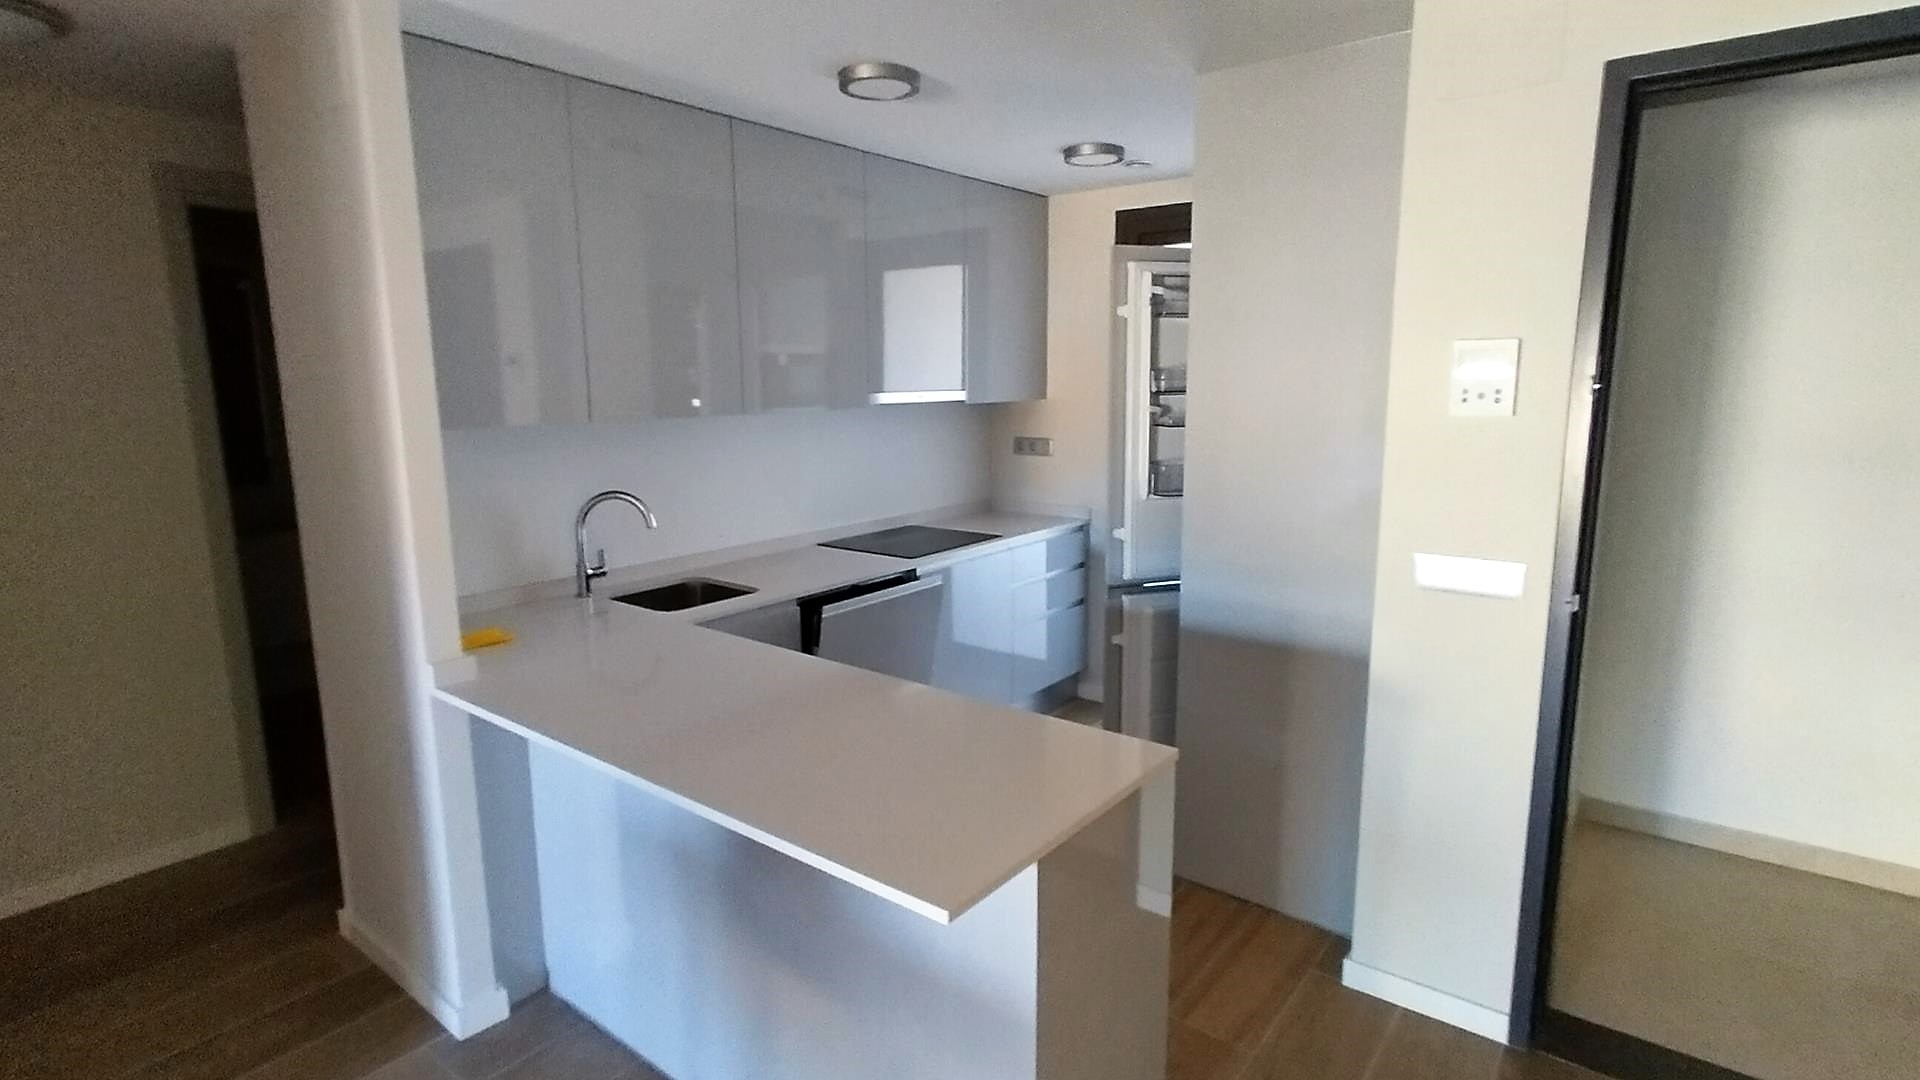 Alquiler apartamento en playa San Juan, Alicante